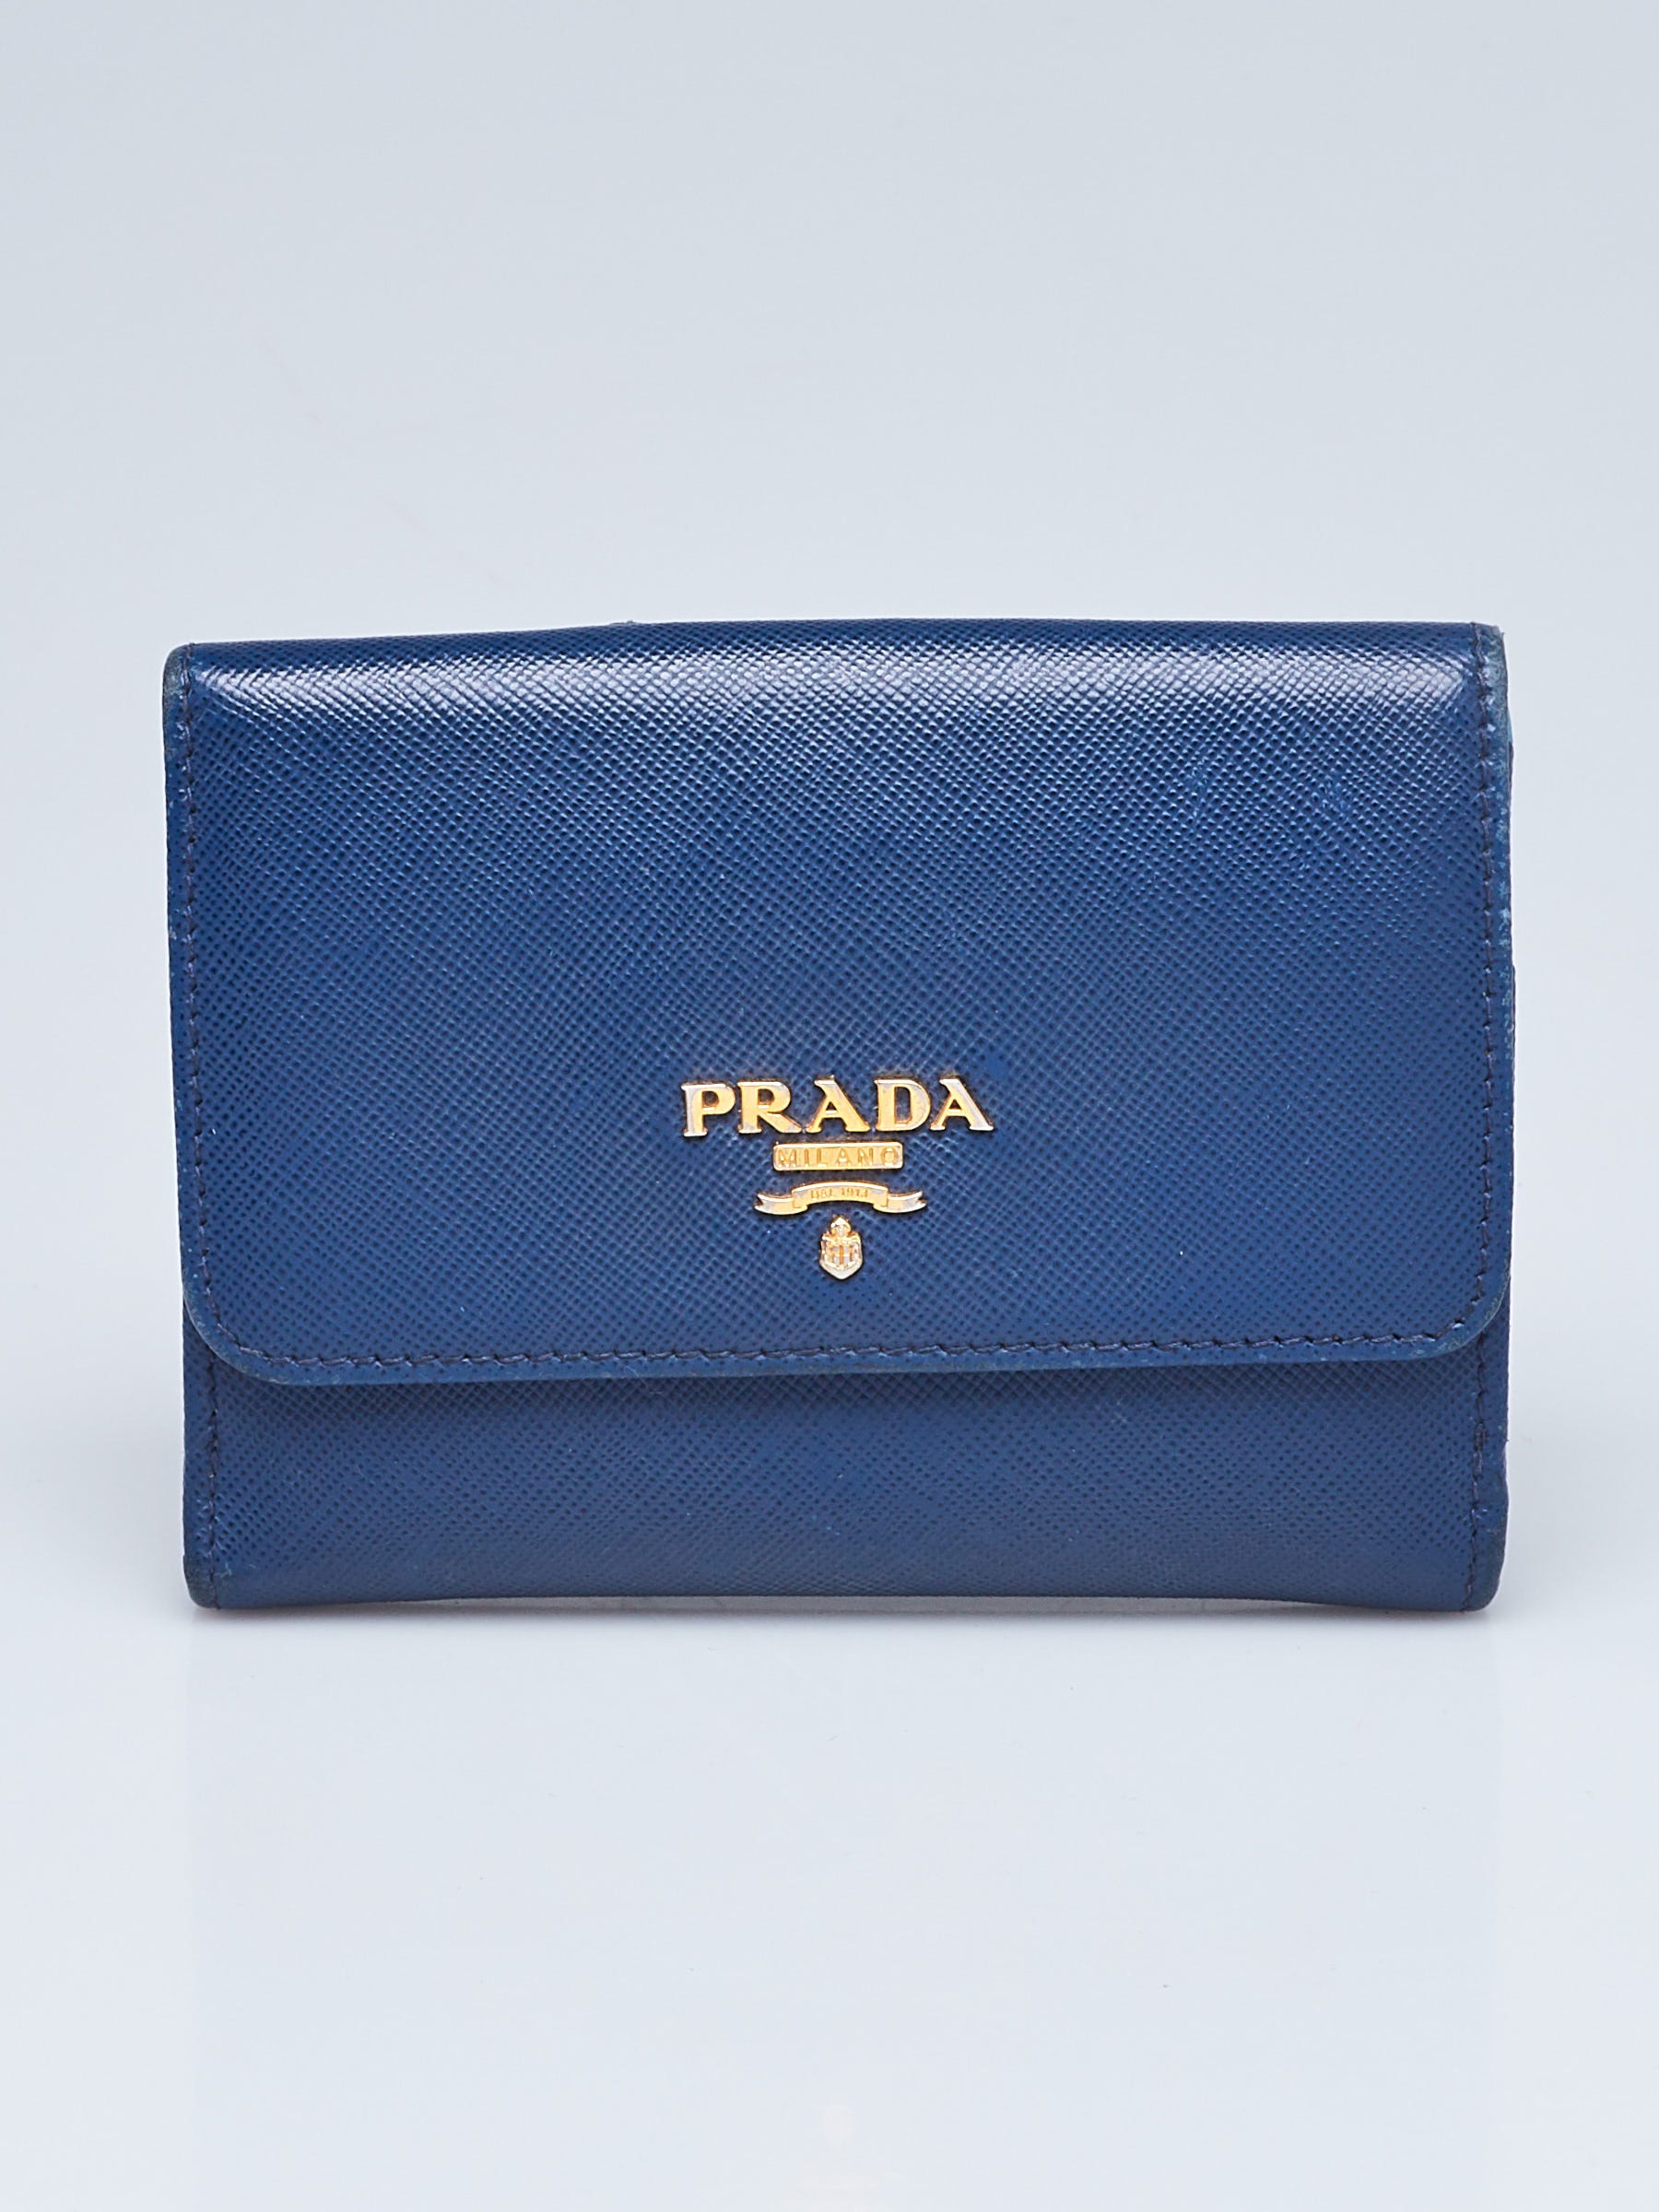 Buy PRADA Vintage Blue Sky Leather Shoulder Bag Hand Bag With Lock Online  in India - Etsy